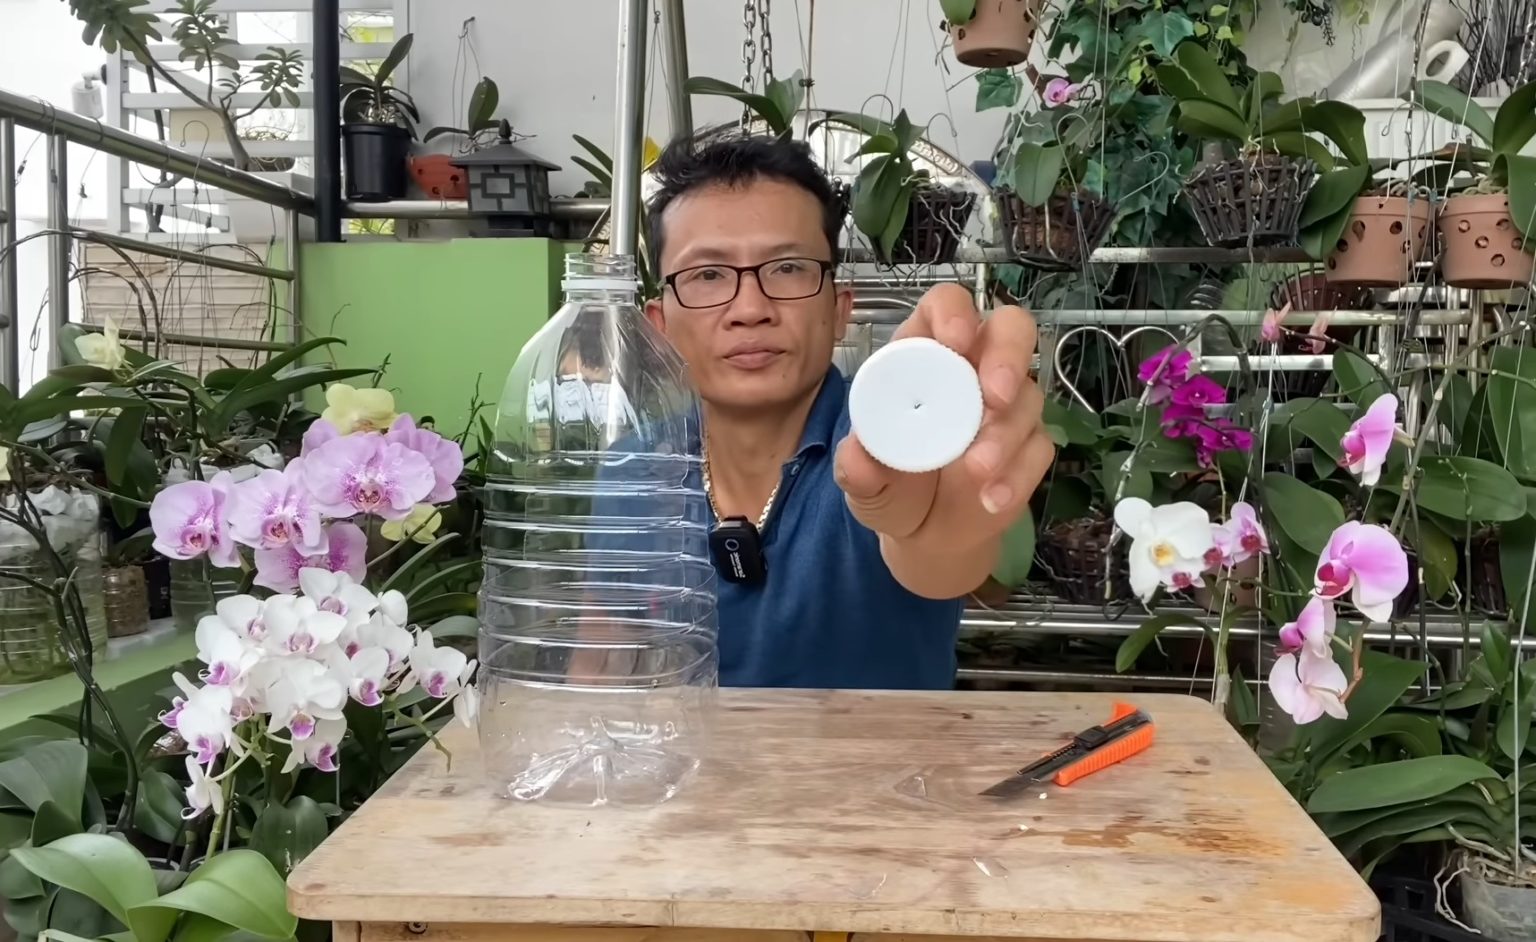 Необычный способ посадки орхидеи для обильного цветения